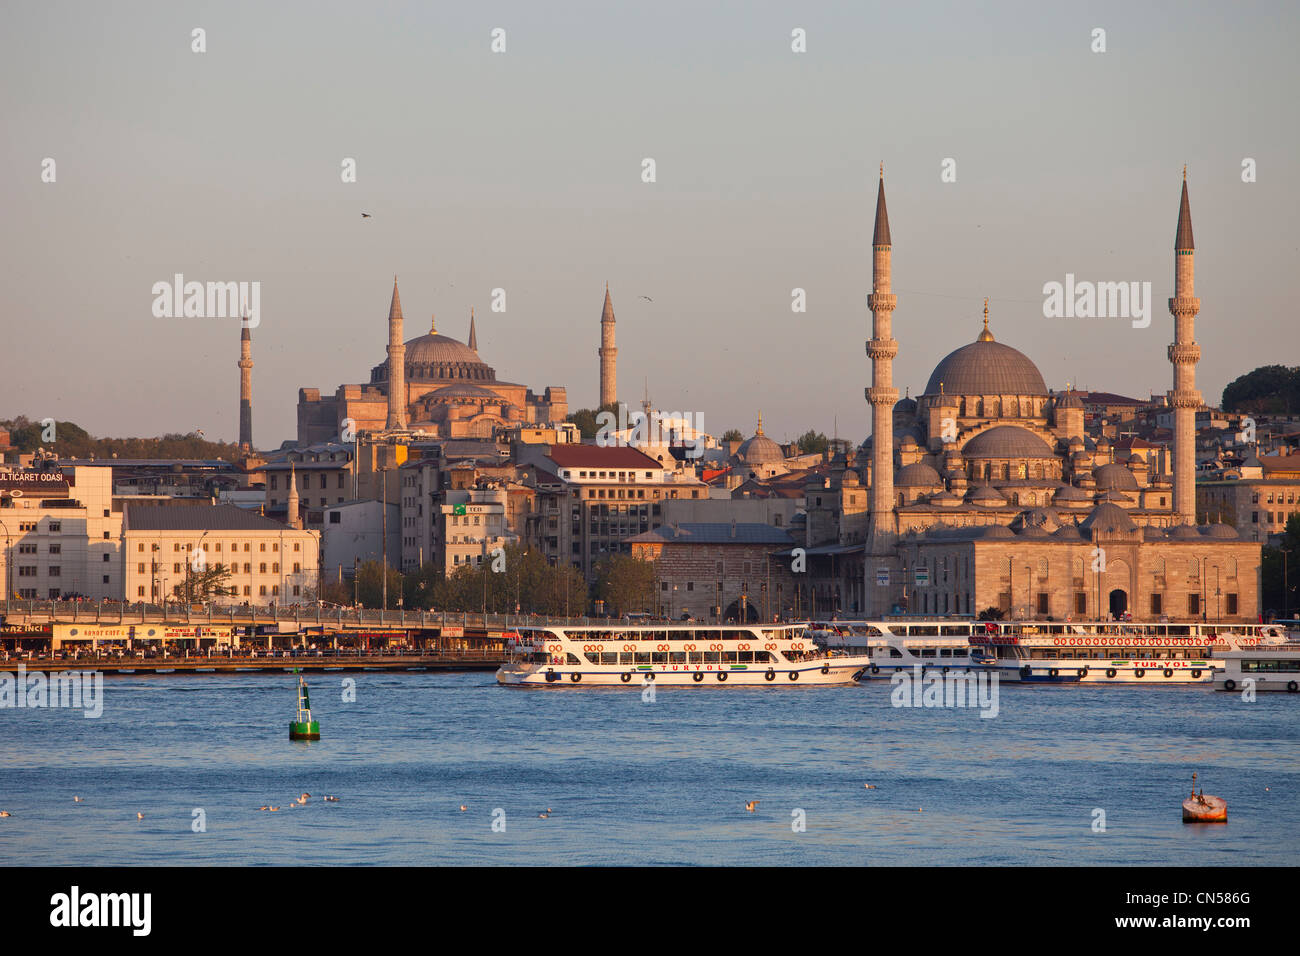 Turchia, Istanbul, centro storico sono classificati come patrimonio mondiale dall'UNESCO, La Yeni Cami (Nuova Moschea moschea e Aya Sofya (Hagia Foto Stock